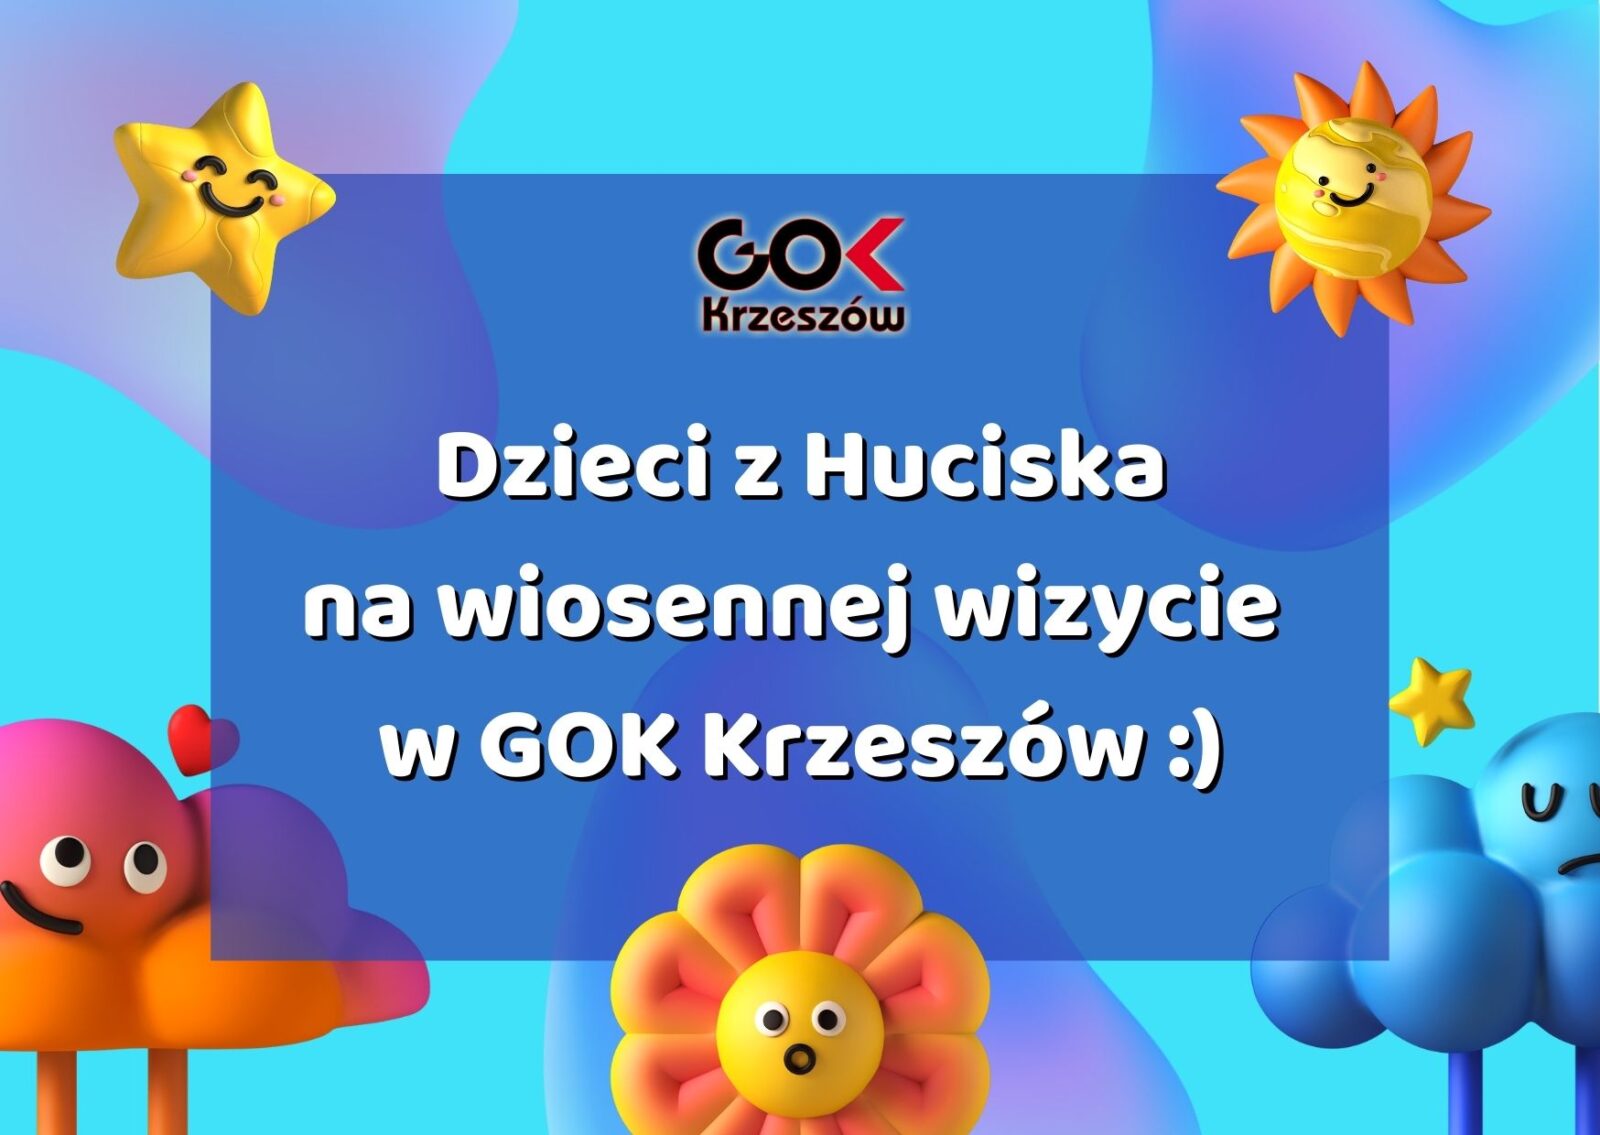 Wiosenna wizyta dzieci z Huciska w GOK Krzeszów